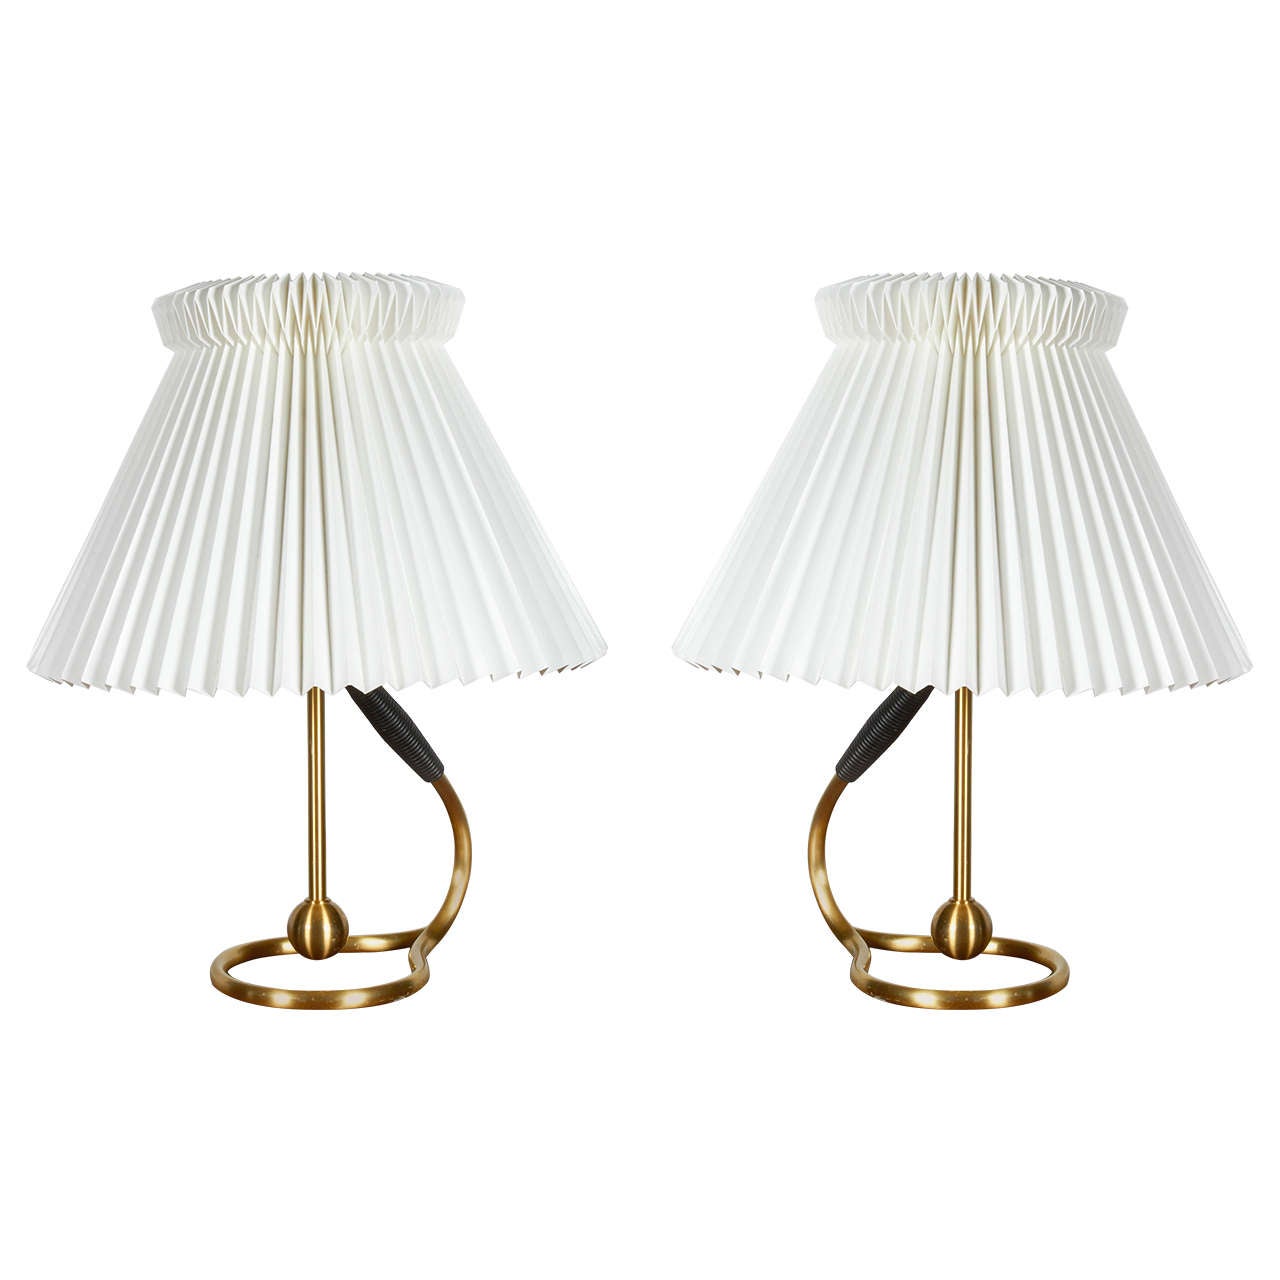 Pair of Vintage Kaare Klint Table Lamps